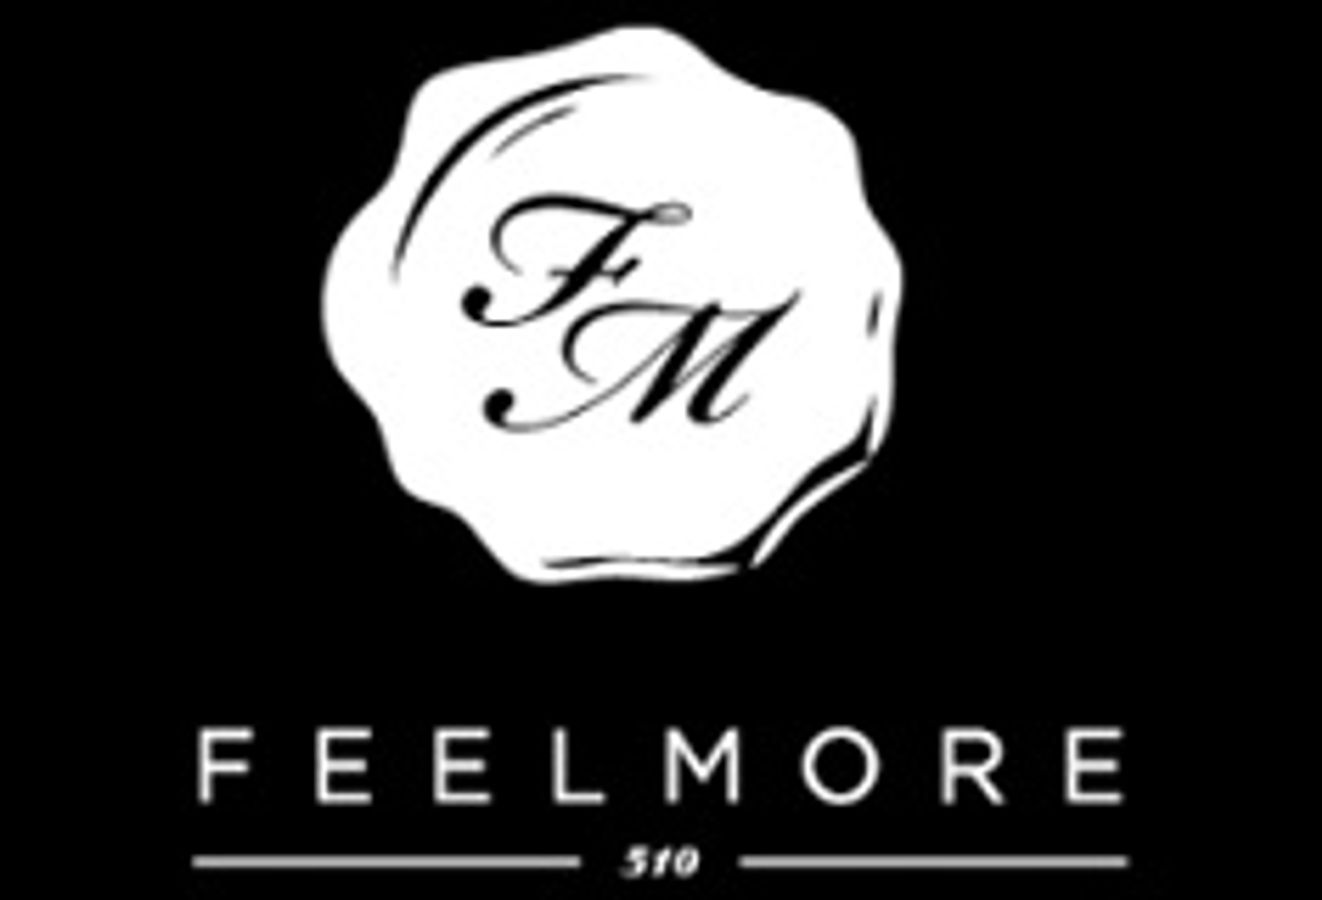 Feelmore 510